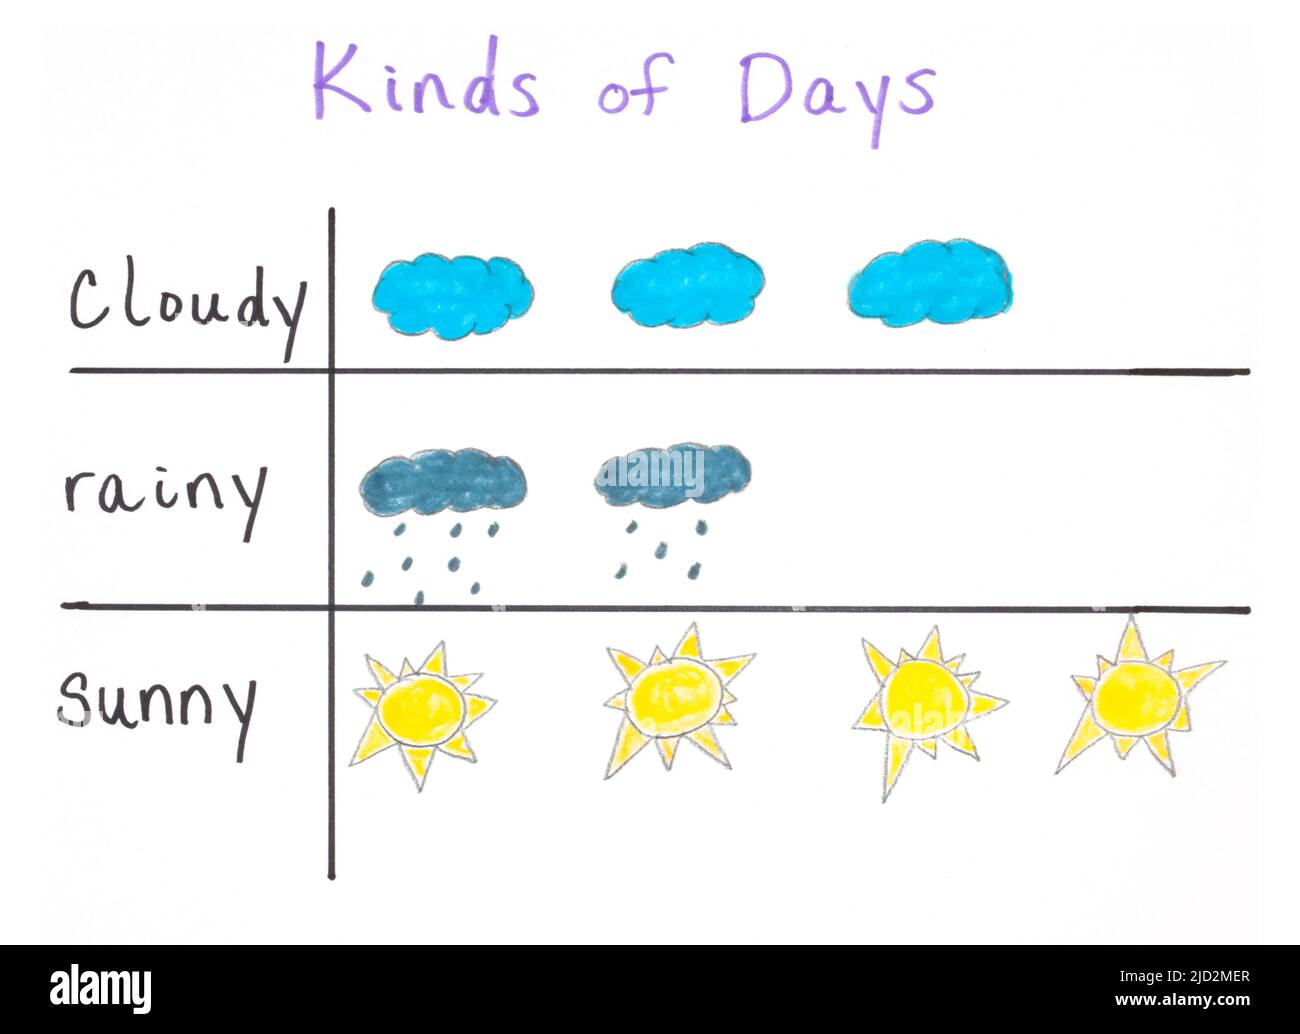 Ein Piktogramm oder Piktogramm eines Kindes und ein Diagramm, in dem Datensätze der Wettermuster der letzten neun Tage angezeigt werden. Stockfoto